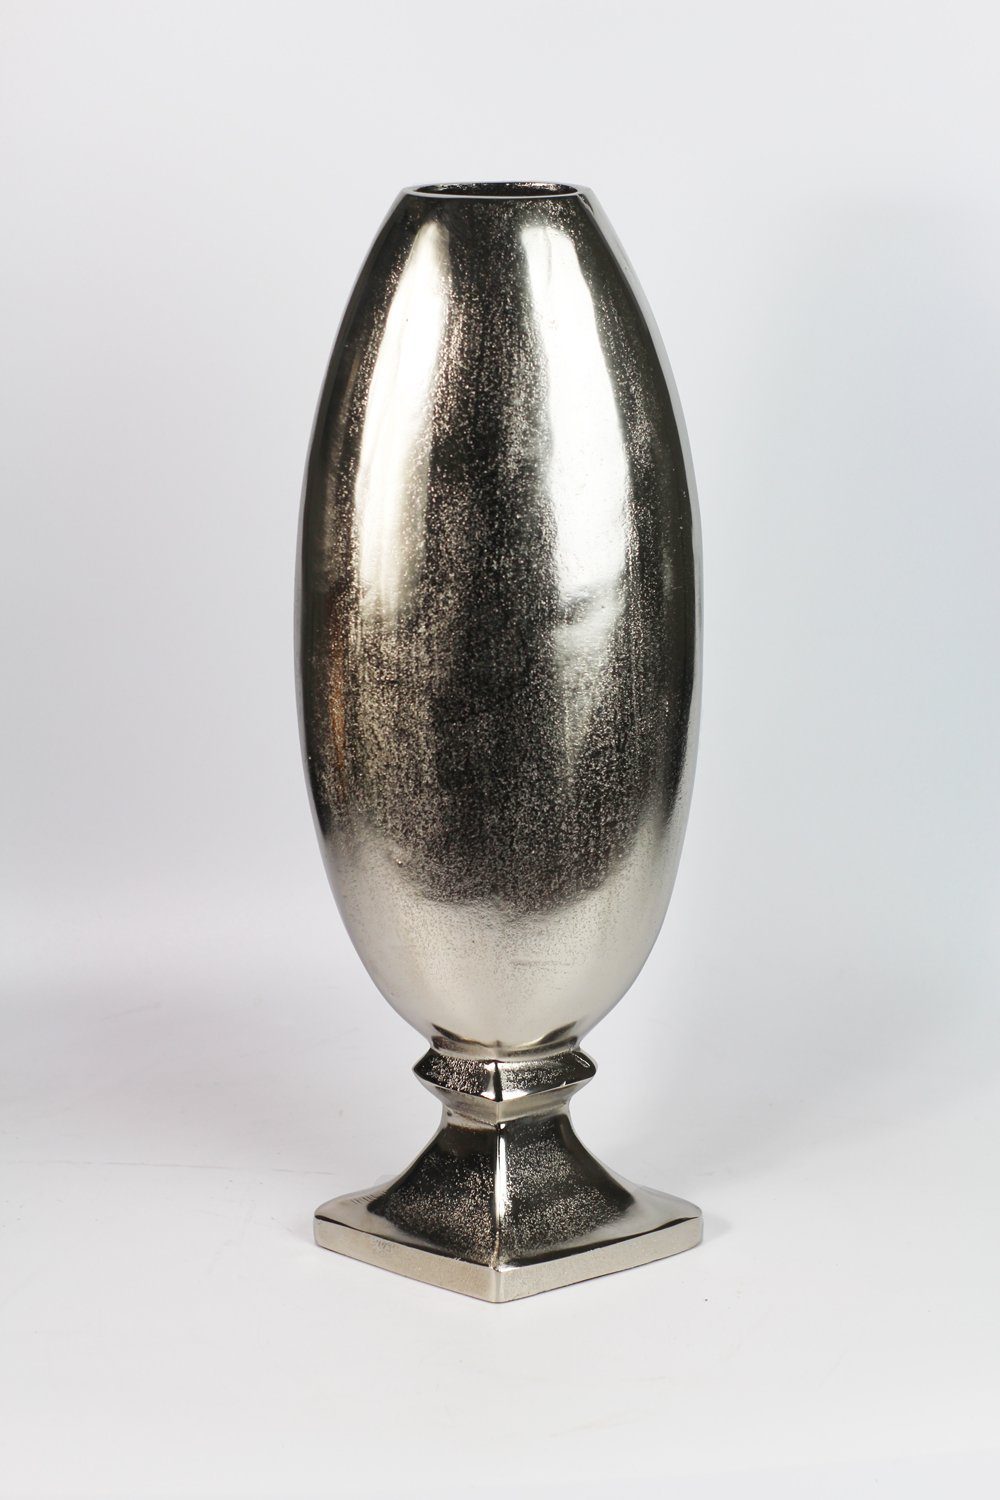 Arnusa Bodenvase silber edle cm Vase Metall Design 70 Dekovase große Pokal Aluminium, Edels